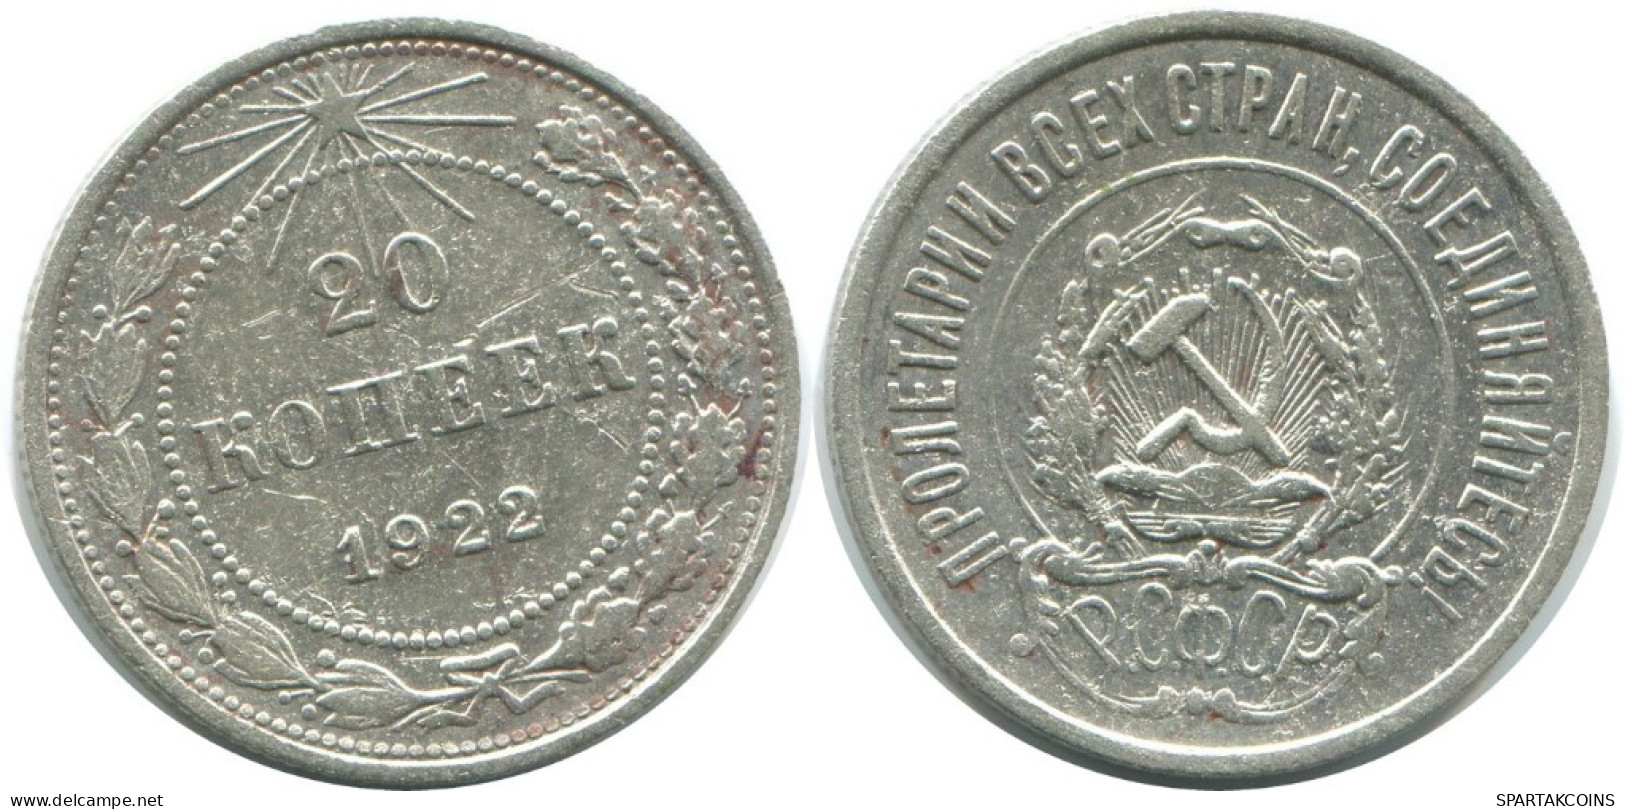 20 KOPEKS 1923 RUSSLAND RUSSIA RSFSR SILBER Münze HIGH GRADE #AF397.4.D.A - Rusia